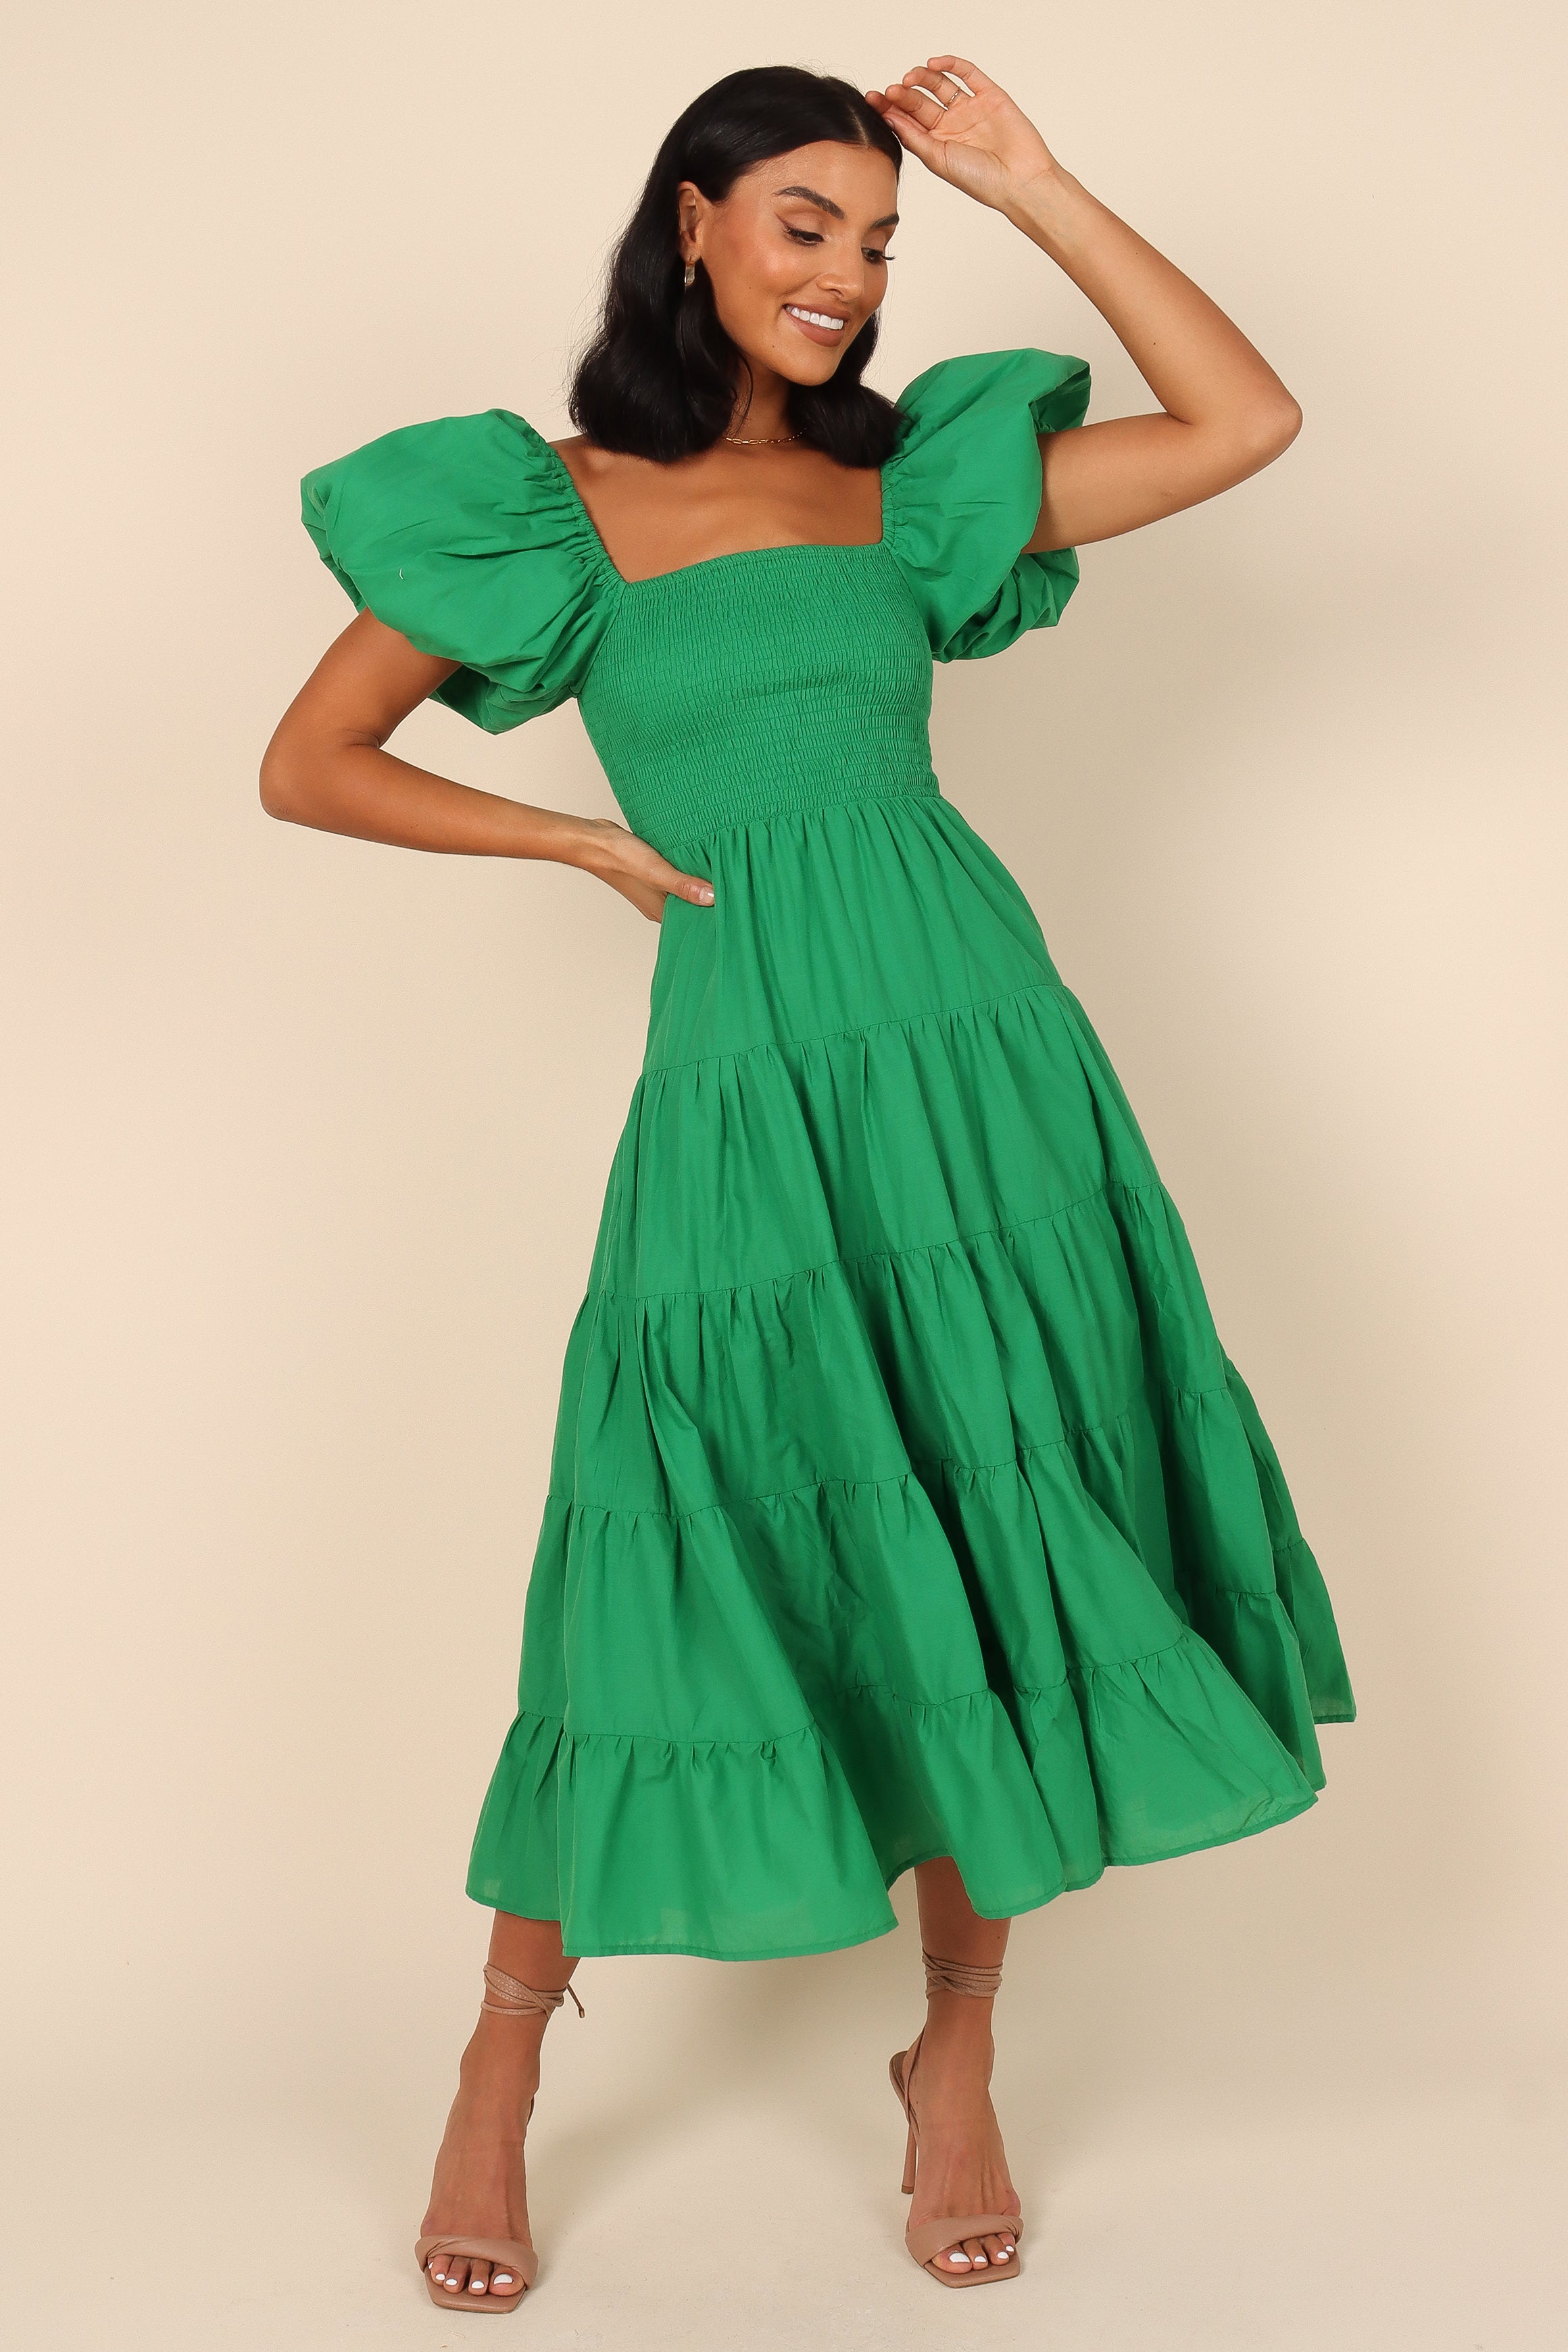 green dress dress